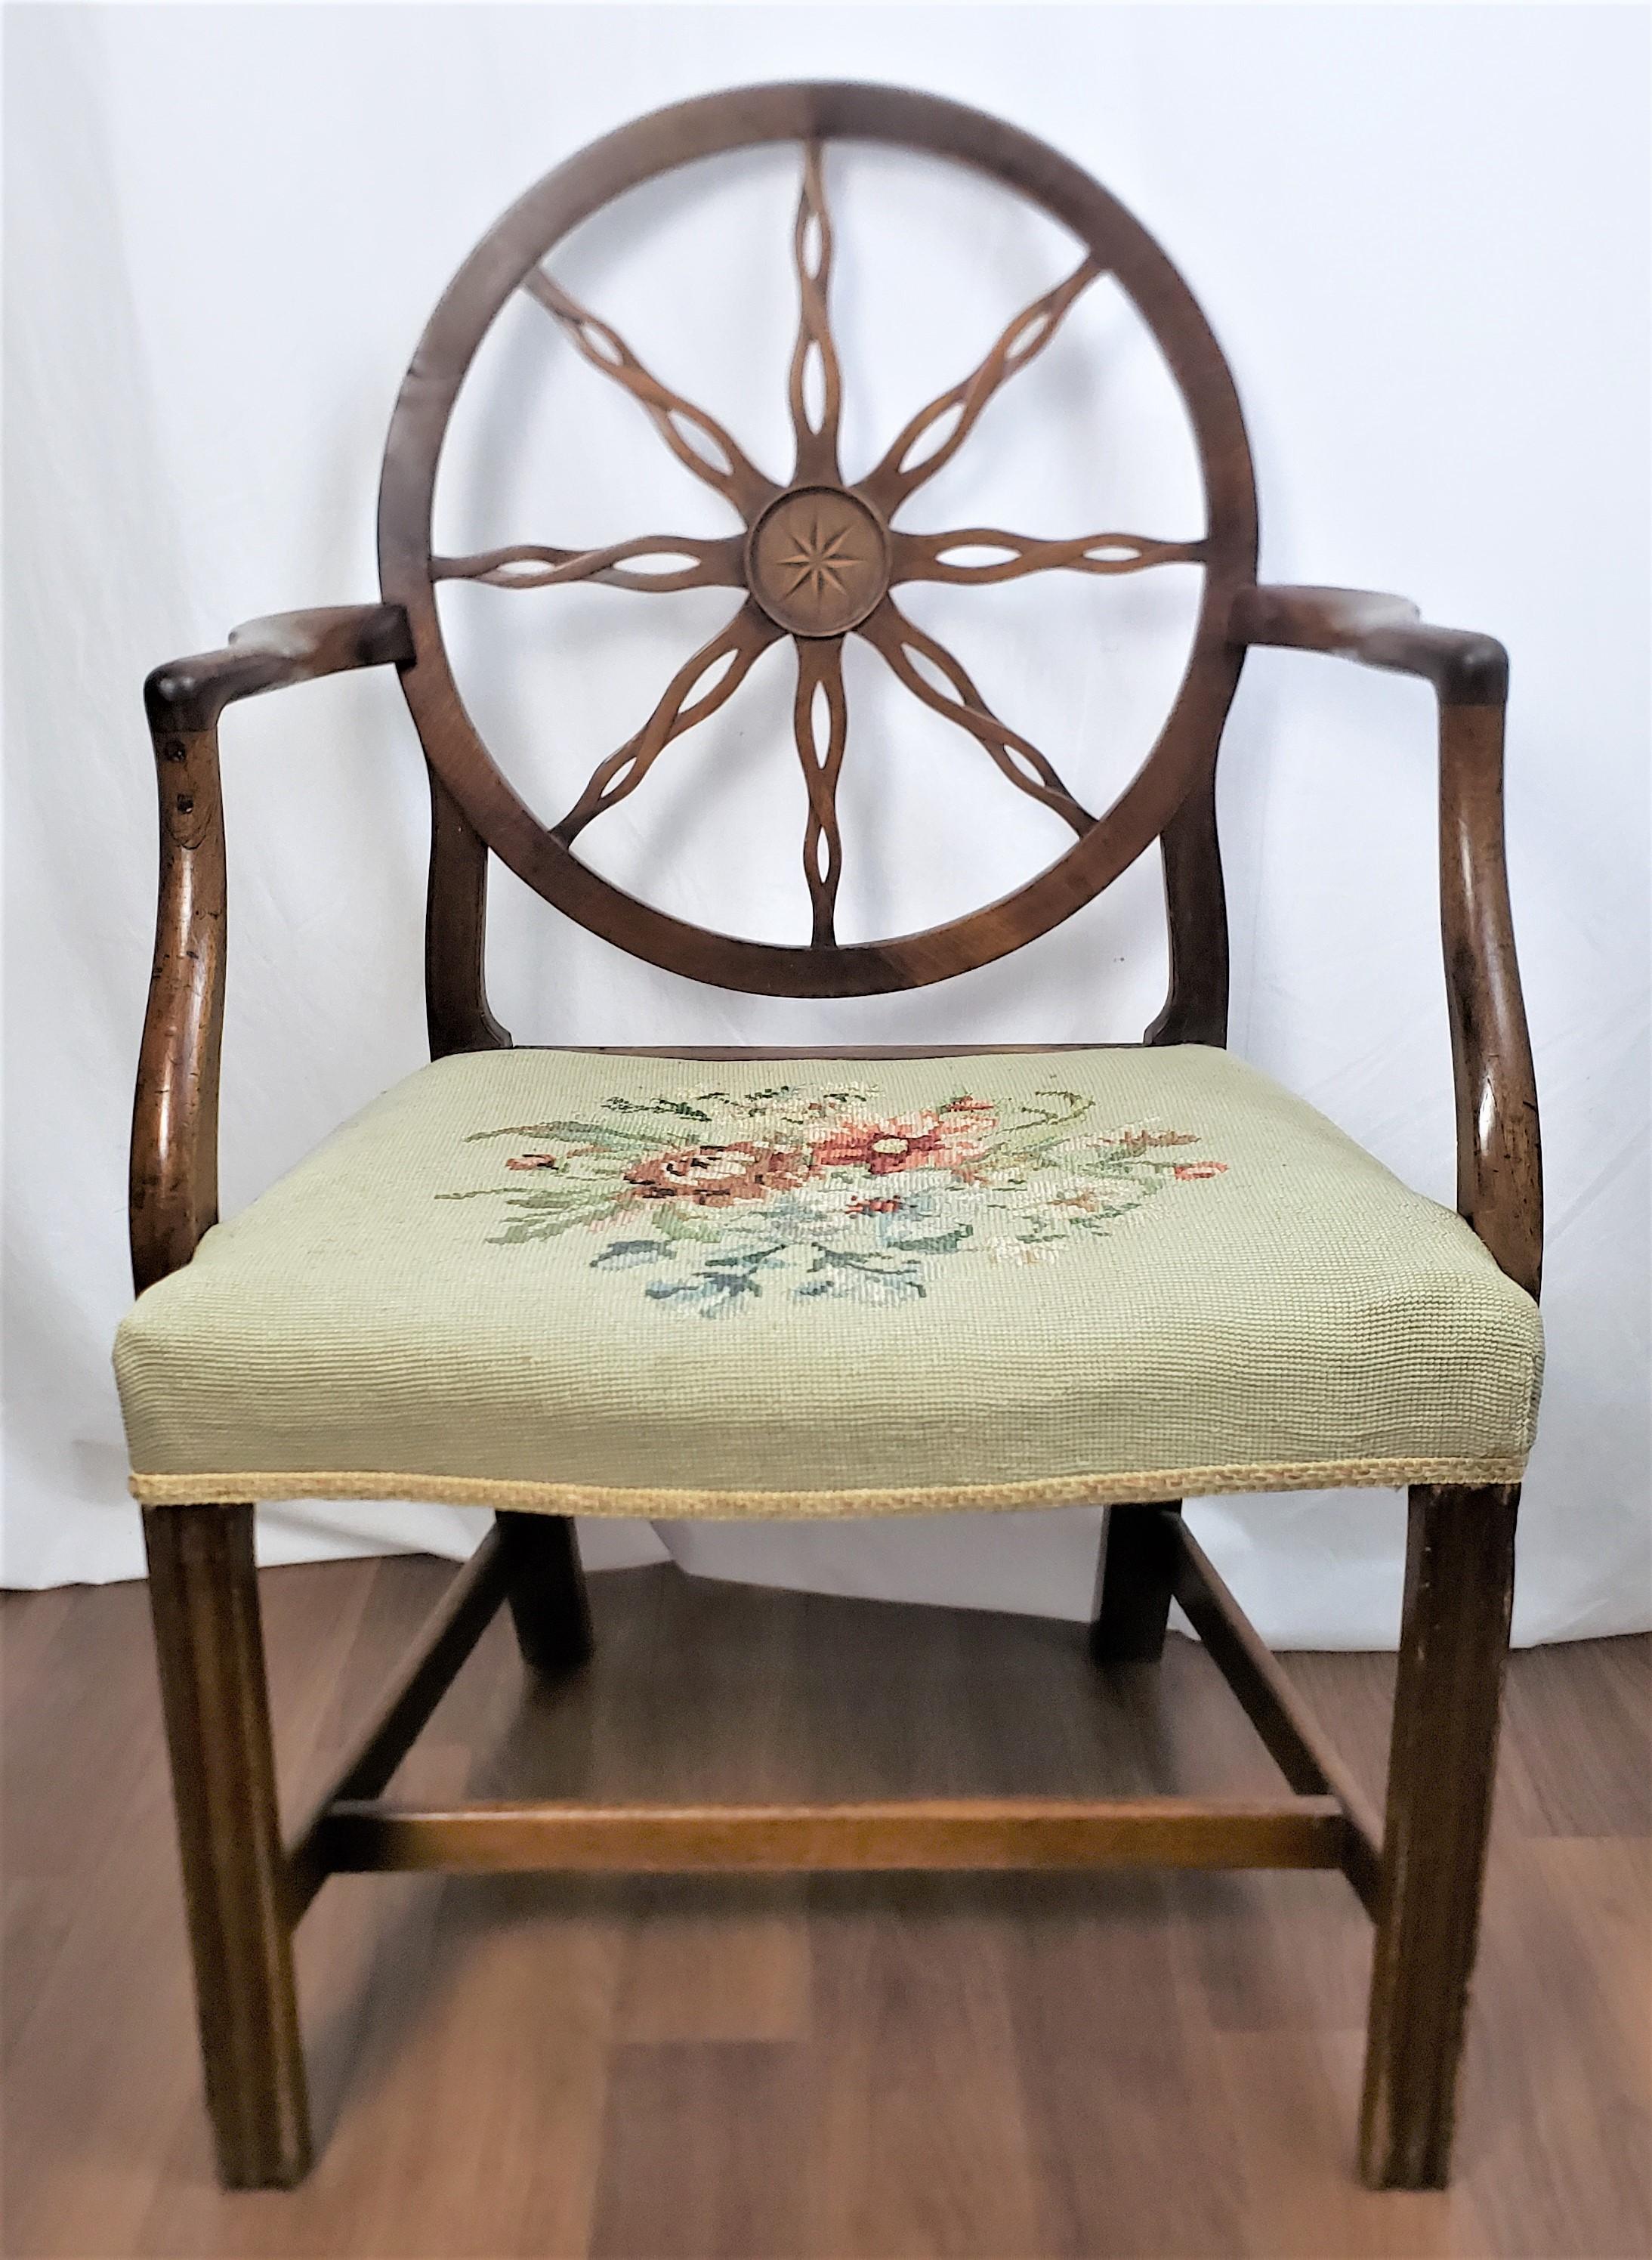 Dieses antike Sesselgestell ist unsigniert, stammt aber vermutlich aus England und wurde um 1790 im Stil von König Georg III. gefertigt. Der Stuhl besteht aus Nussbaumholz und verfügt über eine große Speichenradlehne mit einer stilisierten